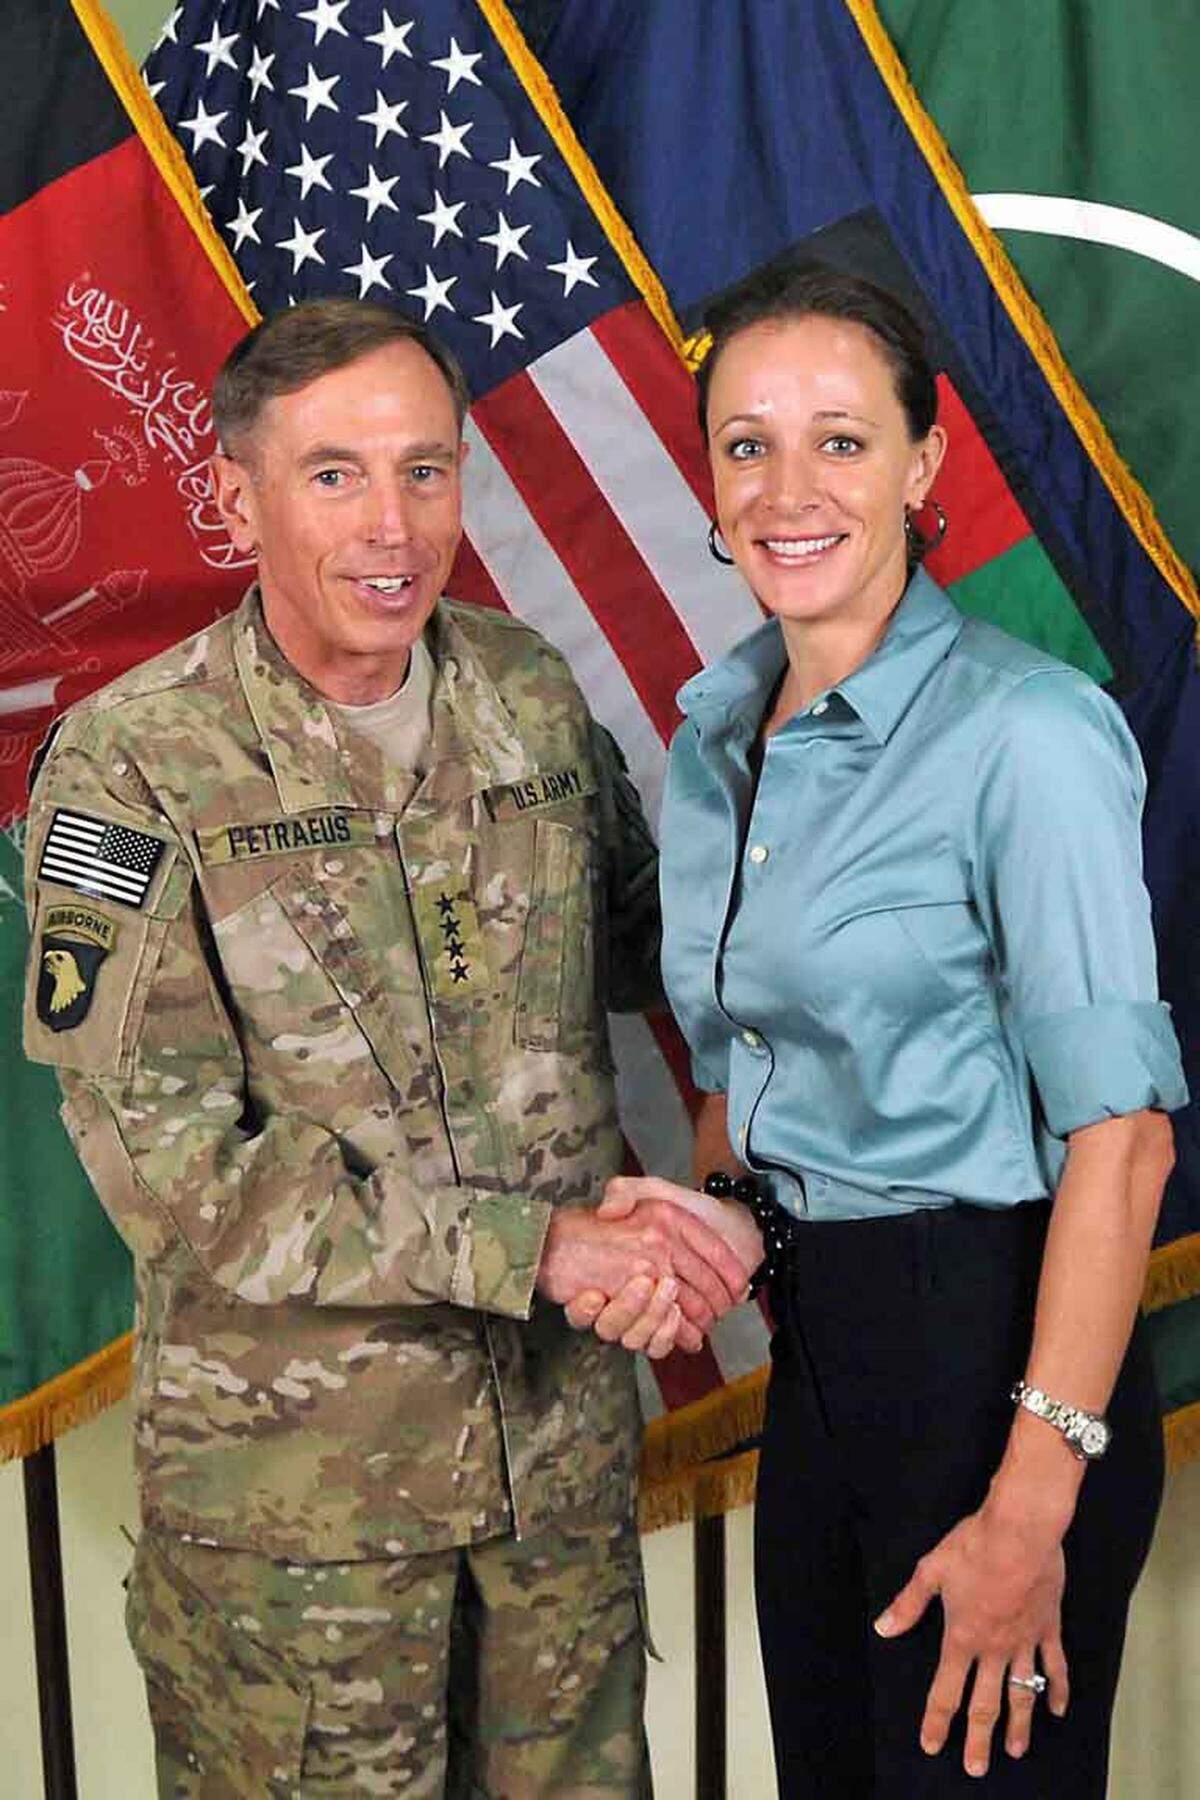 David Petraeus gilt als Held des Irak- und Afghanistankriegs, strategischer Vordenker und "General-Wunderkind". Nun stolperte der CIA-Chef über eine außereheliche Affäre mit seiner Biografin Paula Broadwell (Bild). Ein Blick auf den Werdegang von "König David".